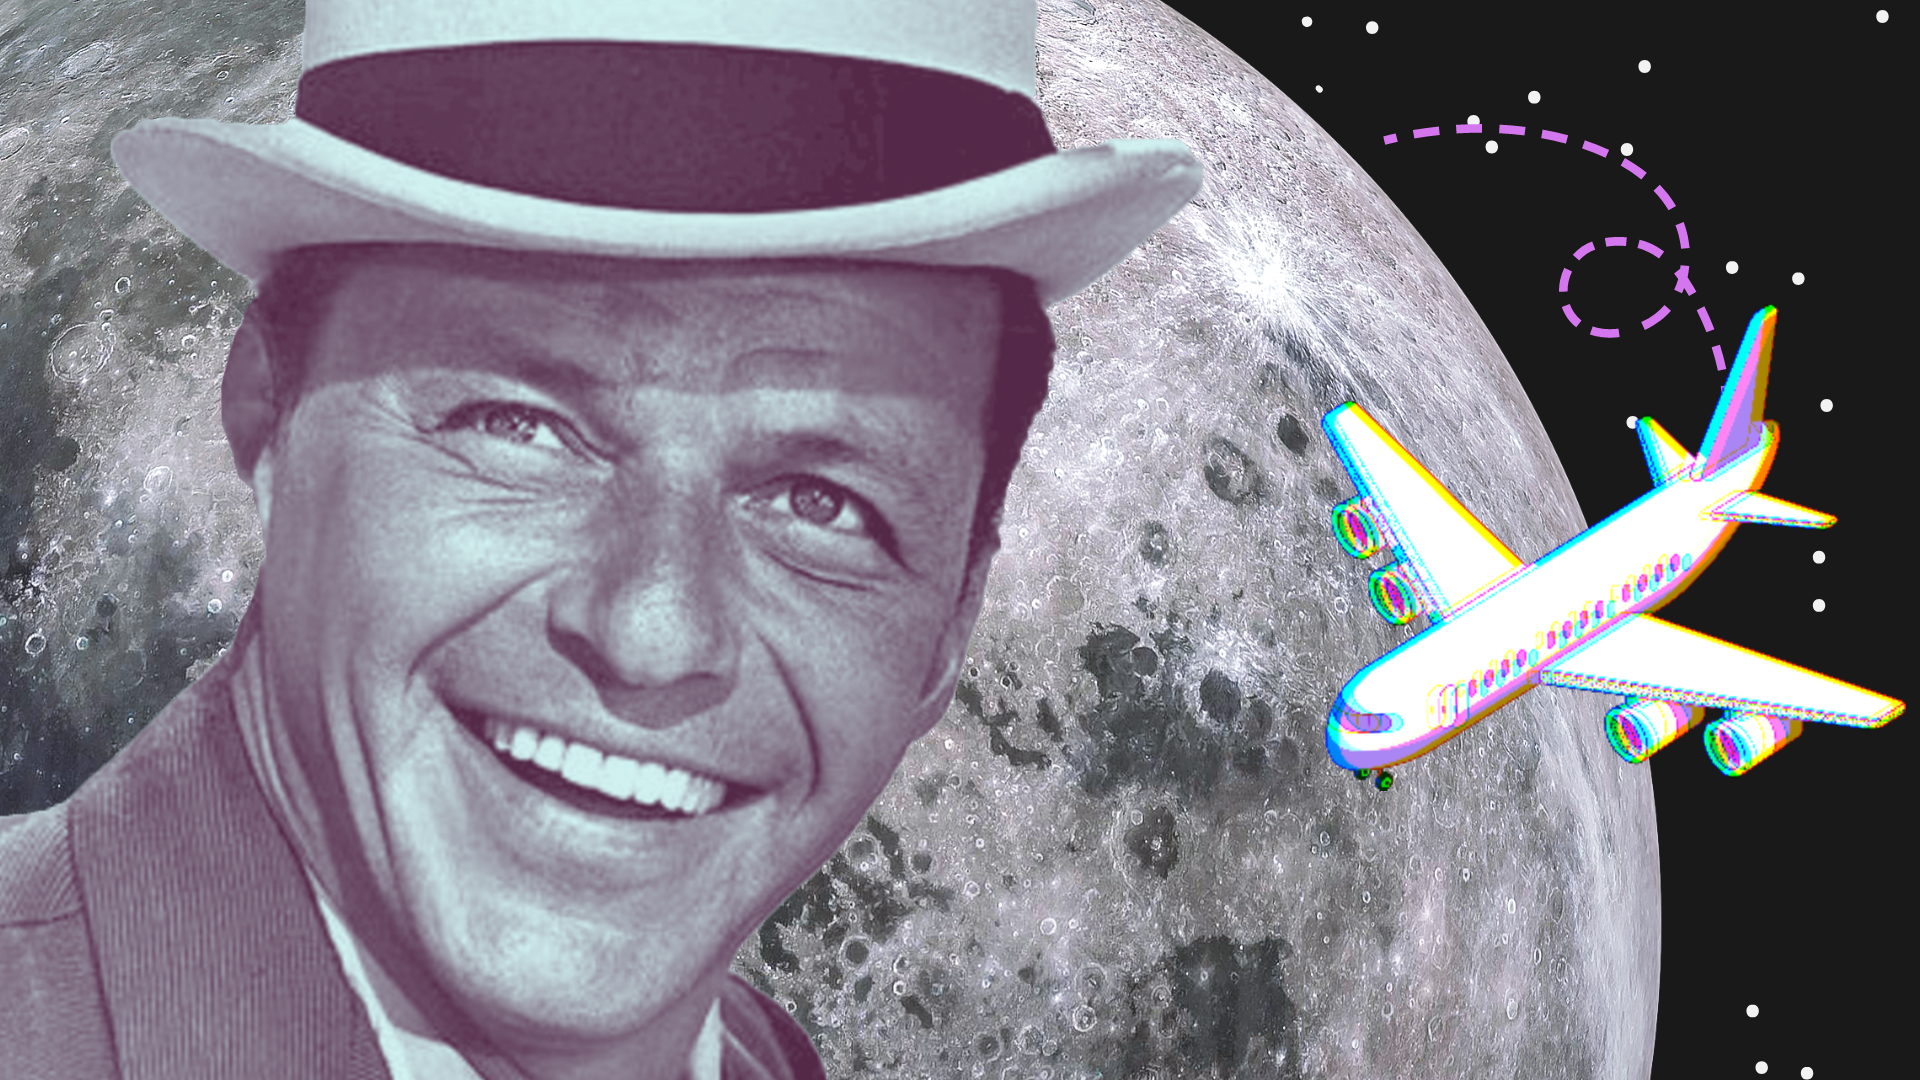 La science en chansons: "Fly Me to the Moon" de Frank Sinatra.